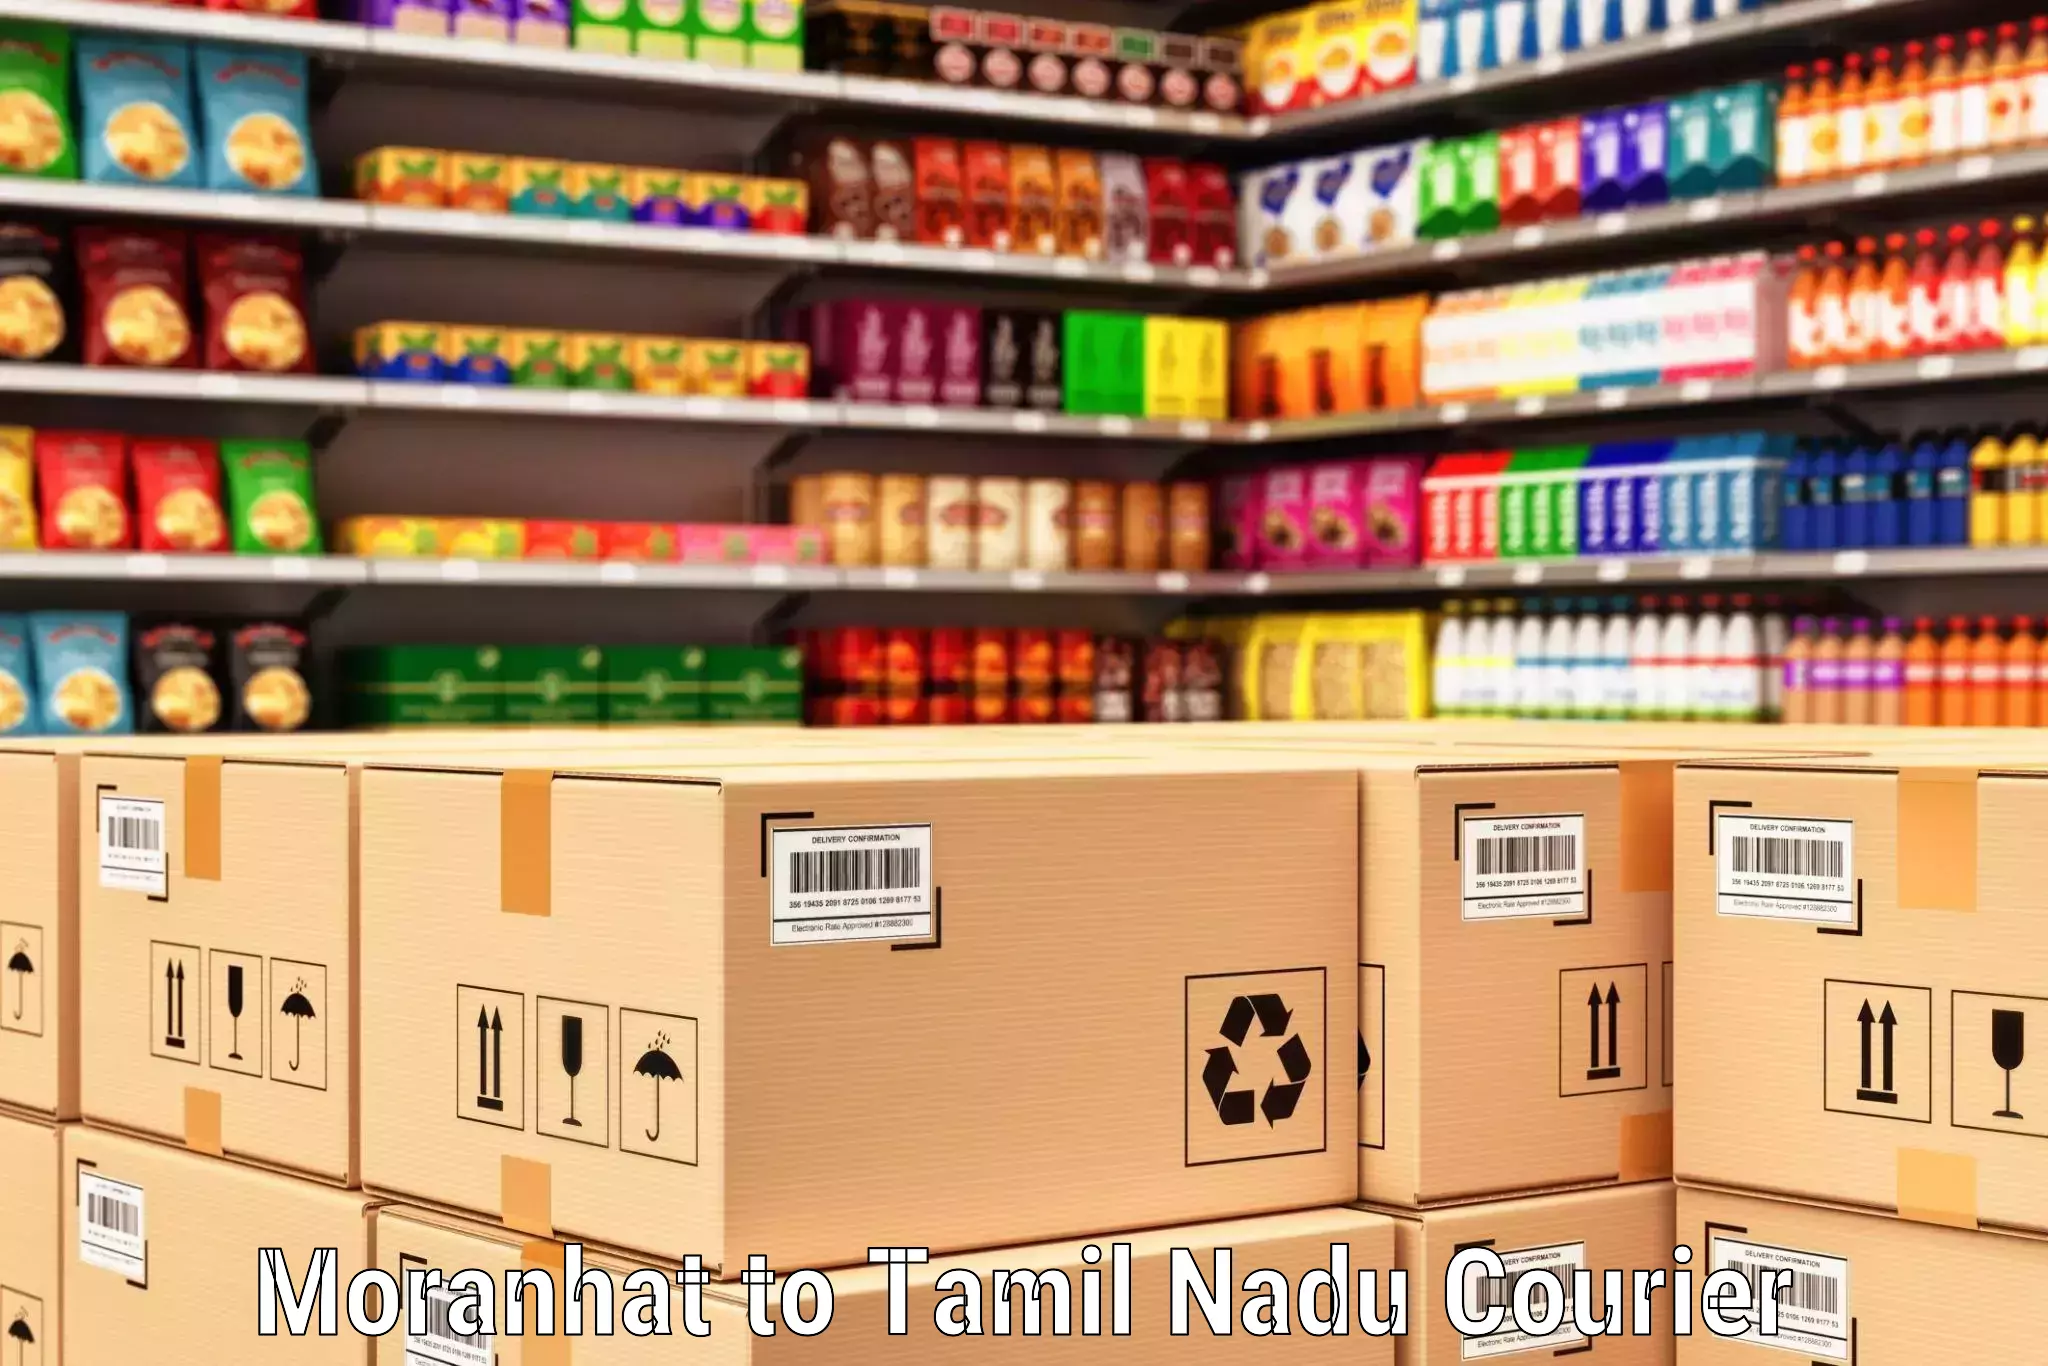 Custom courier packaging Moranhat to Tamil Nadu